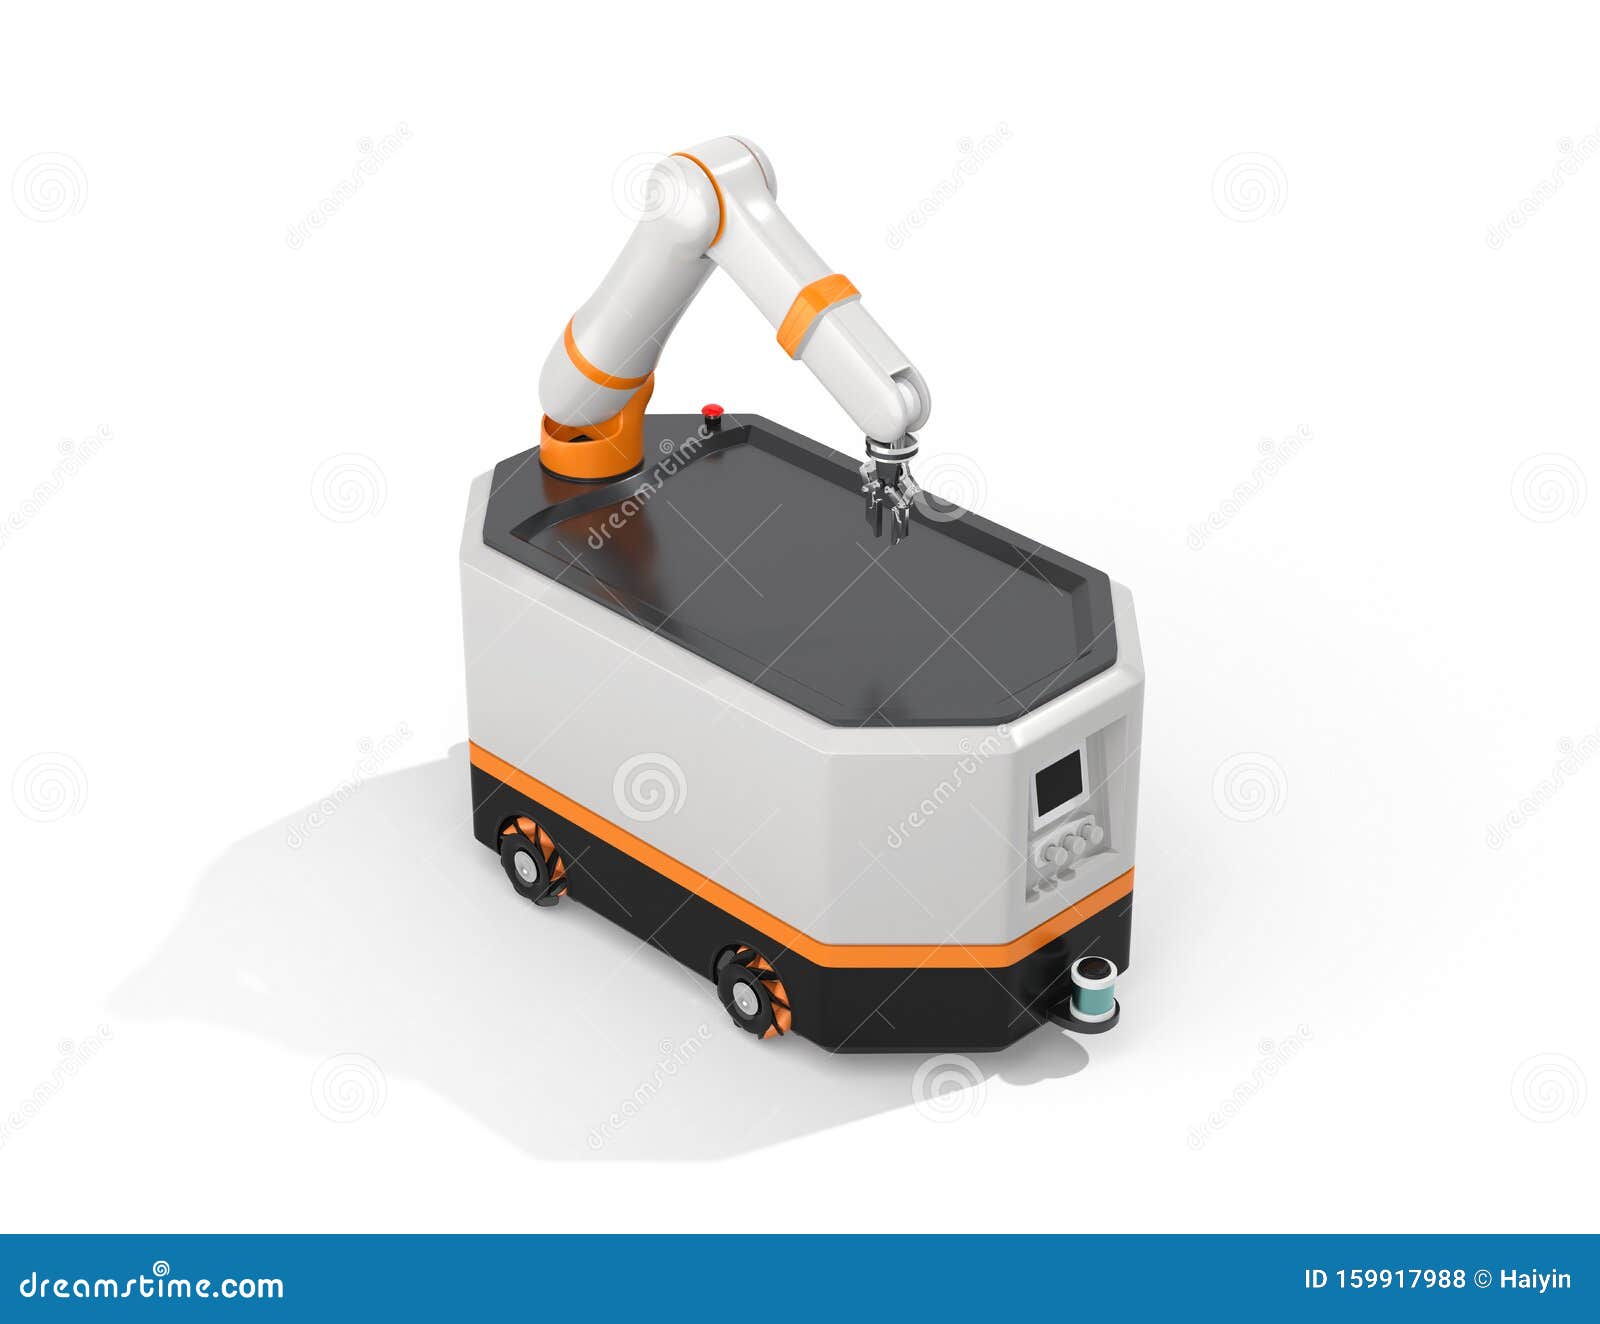 mobile robot agv  on white background